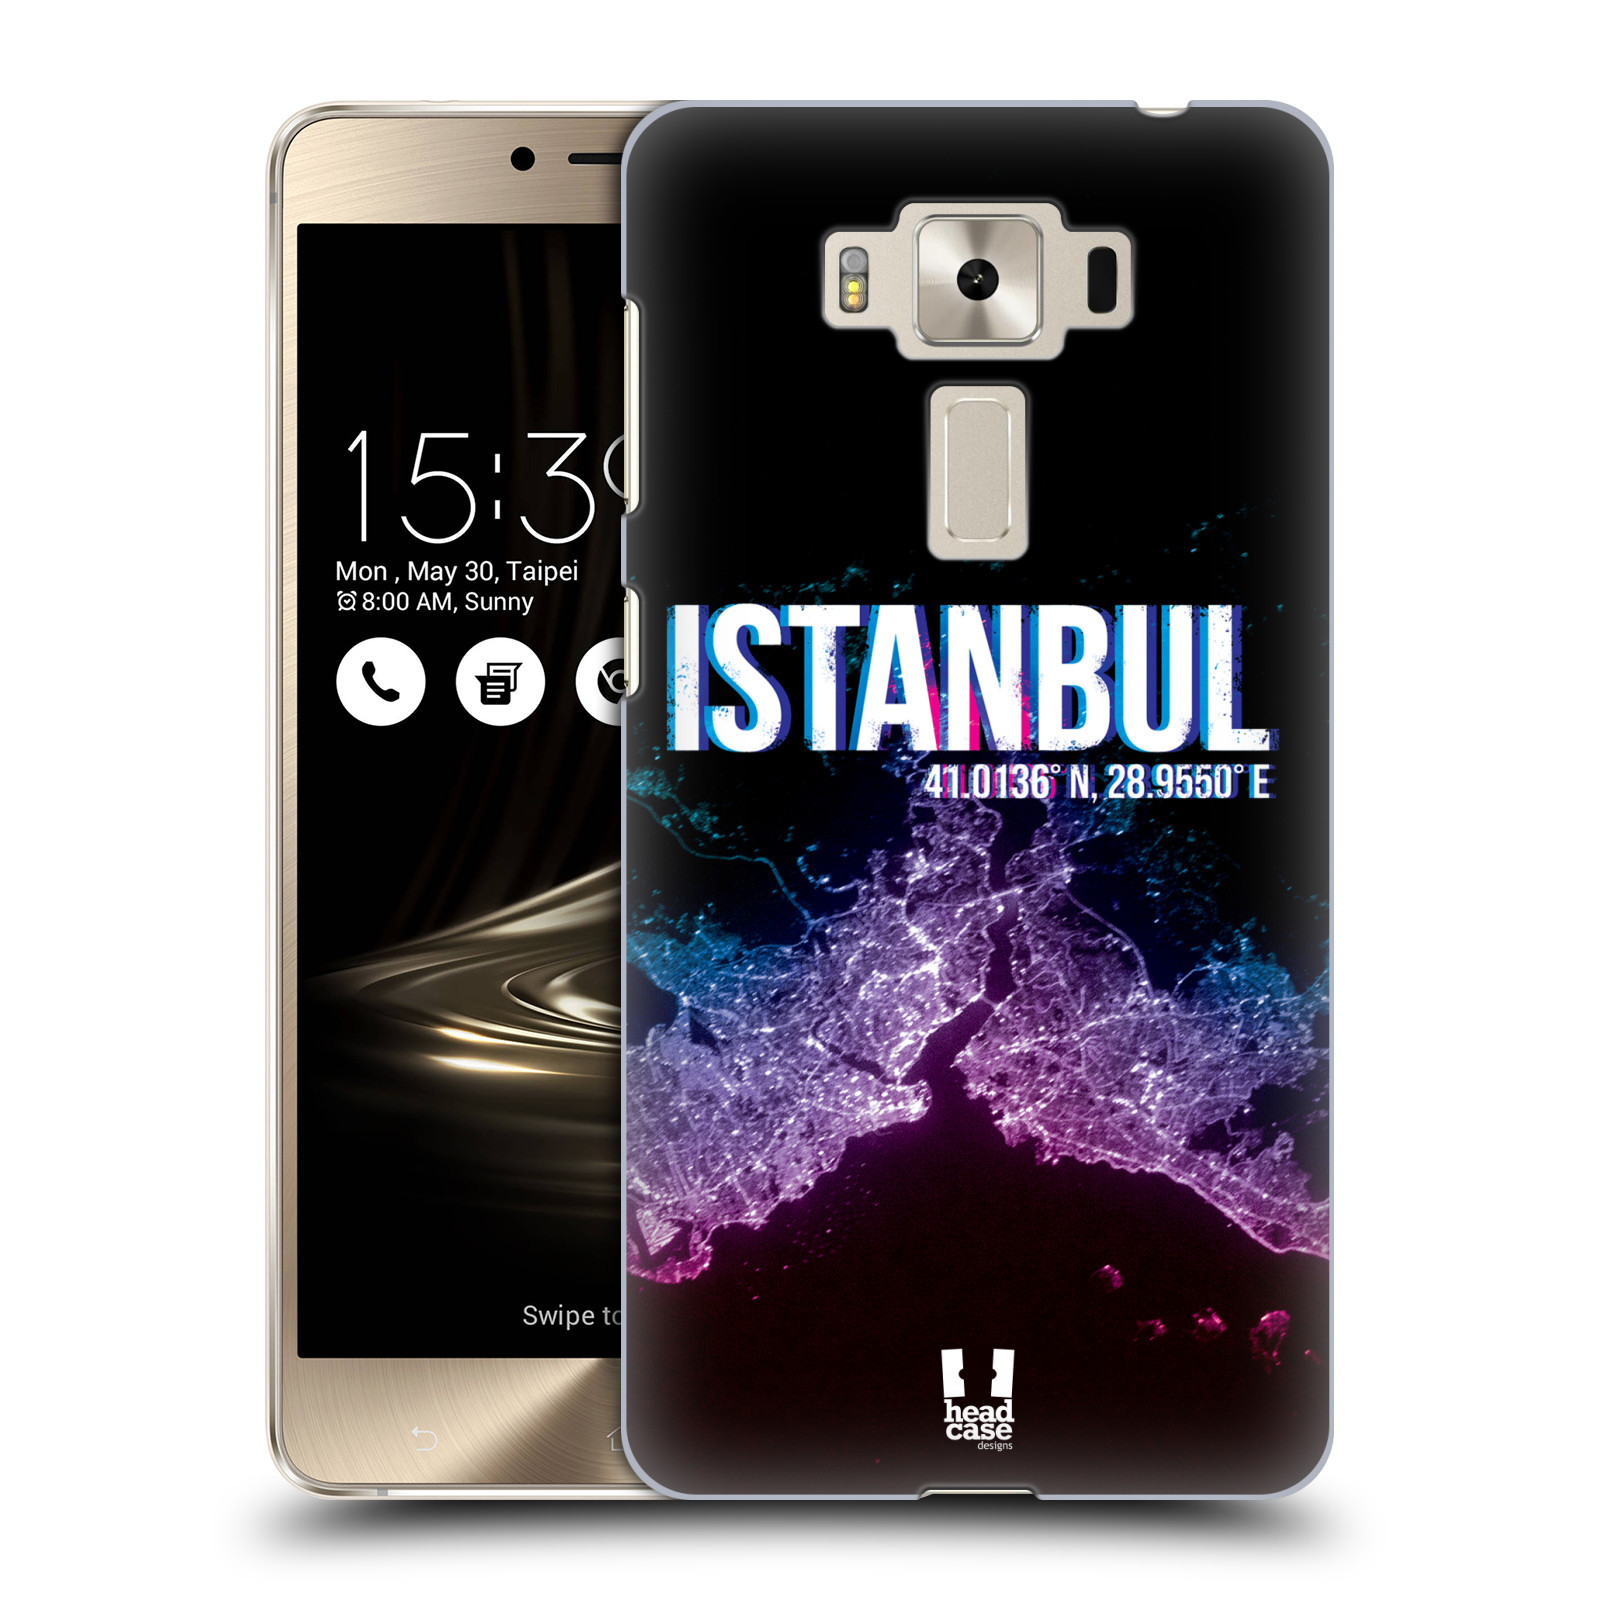 HEAD CASE plastový obal na mobil Asus Zenfone 3 DELUXE ZS550KL vzor Světla známých měst, Satelitní snímky TURECKO, ISTANBUL